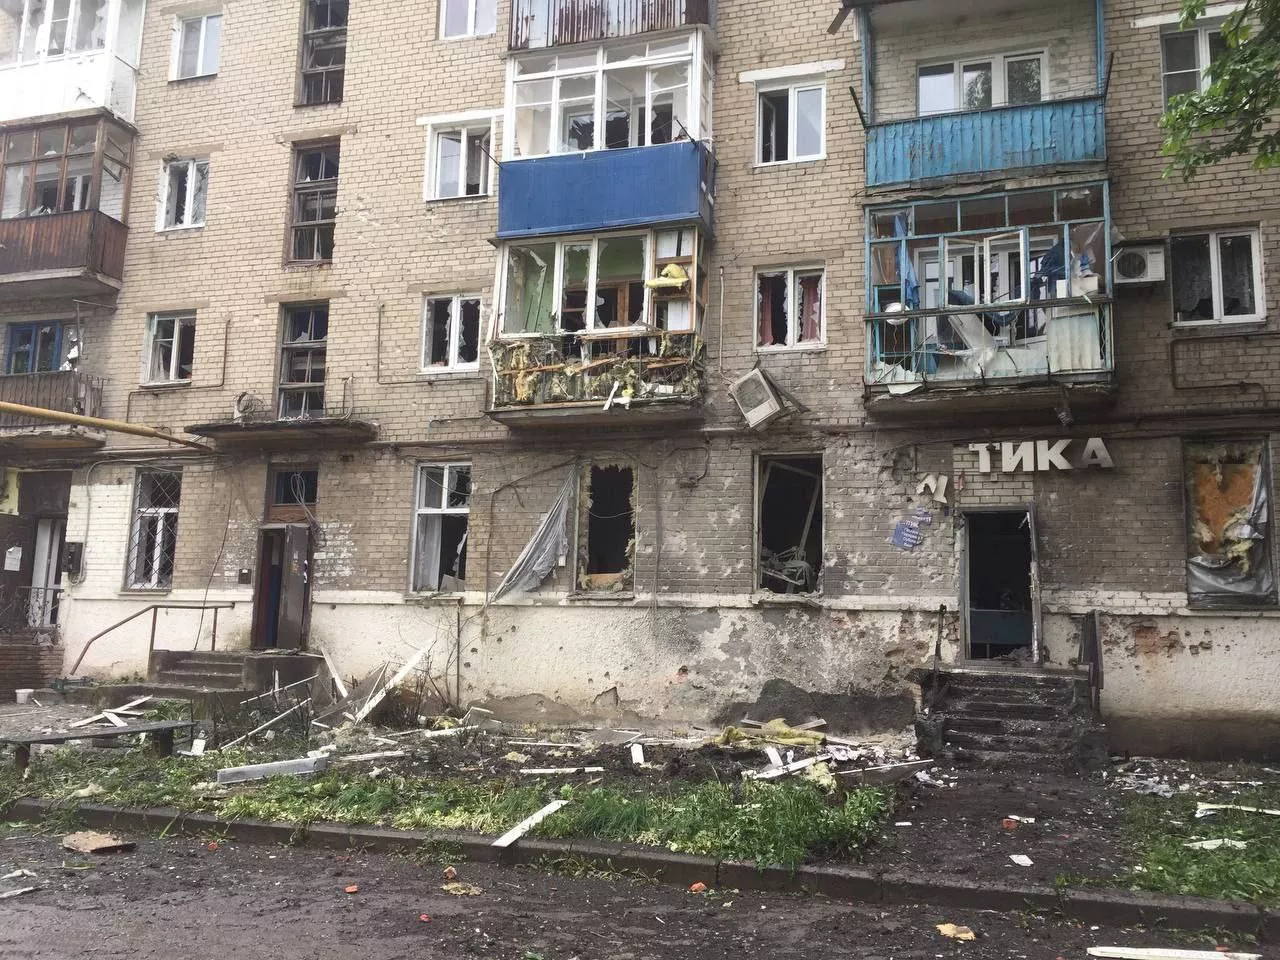 Ко всем бедам Донецк еще и регулярно обстреливают. Откуда прилетает, точно неясно. Многие в городе считают, что это россияне подливают масла в огонь